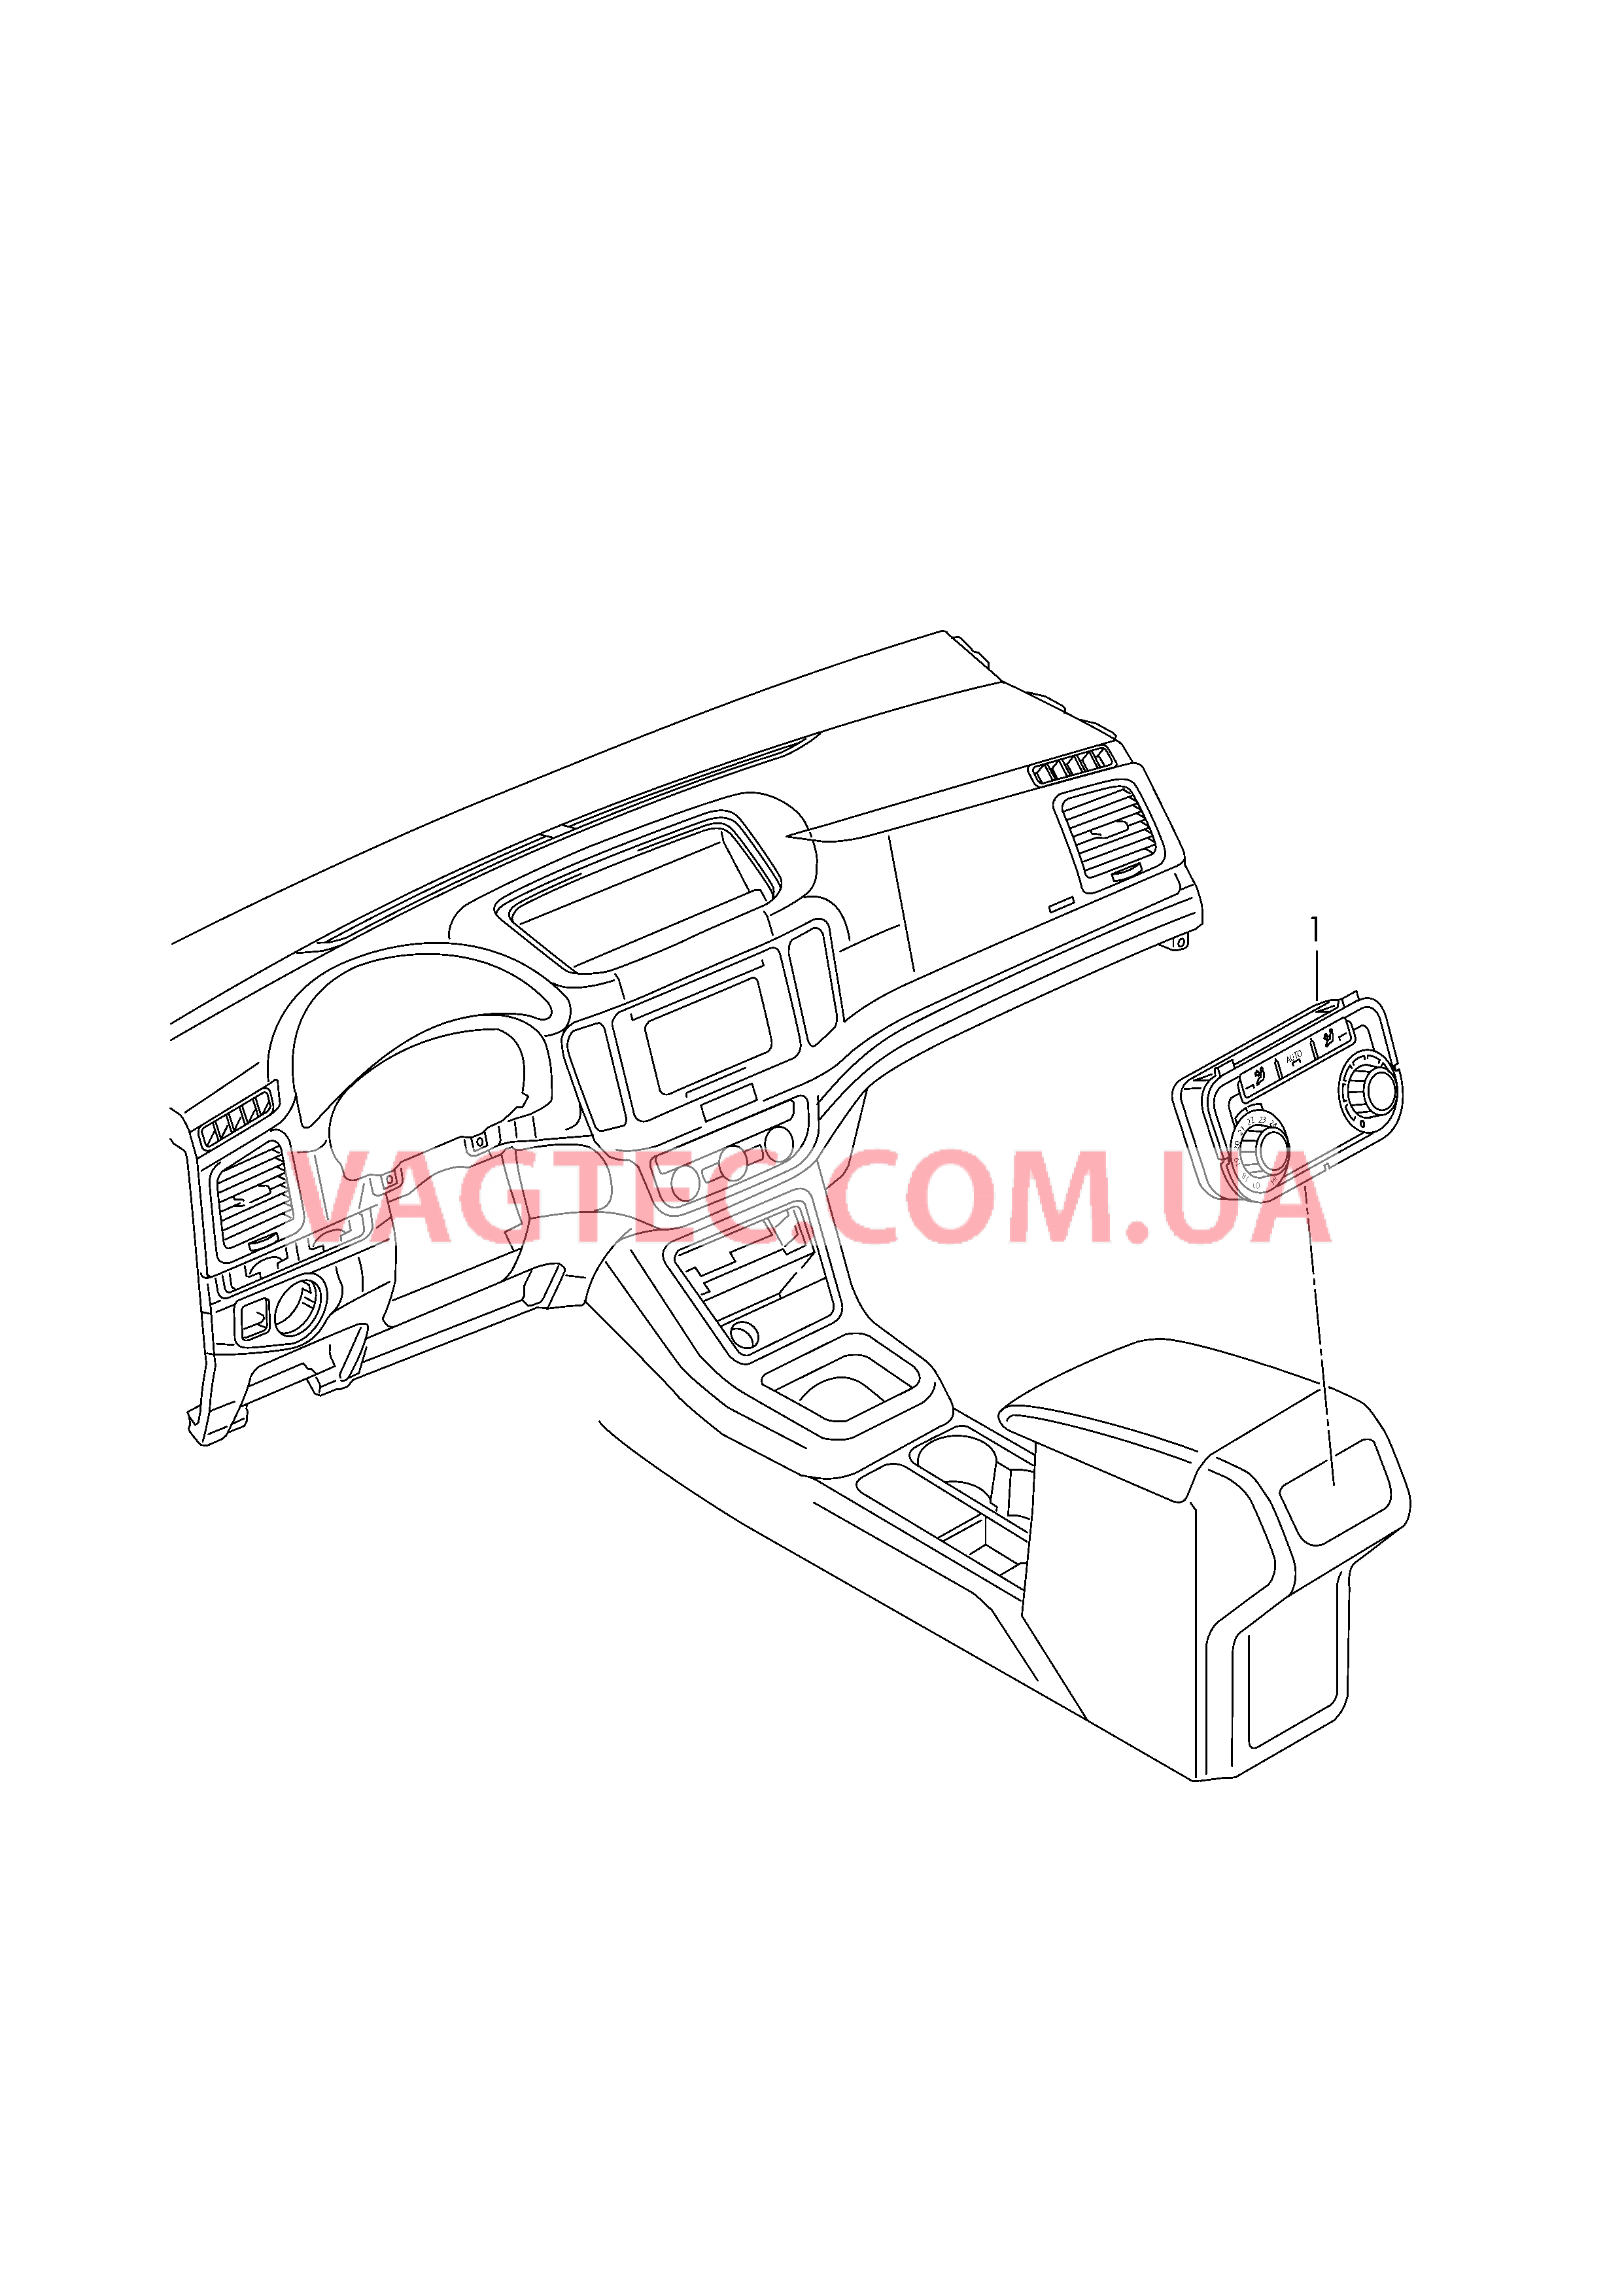 БУ климатической установки Панель управления и индикации БУ климатической установки с электронным управлением   Центральная консоль  для SEAT Alhambra 2019